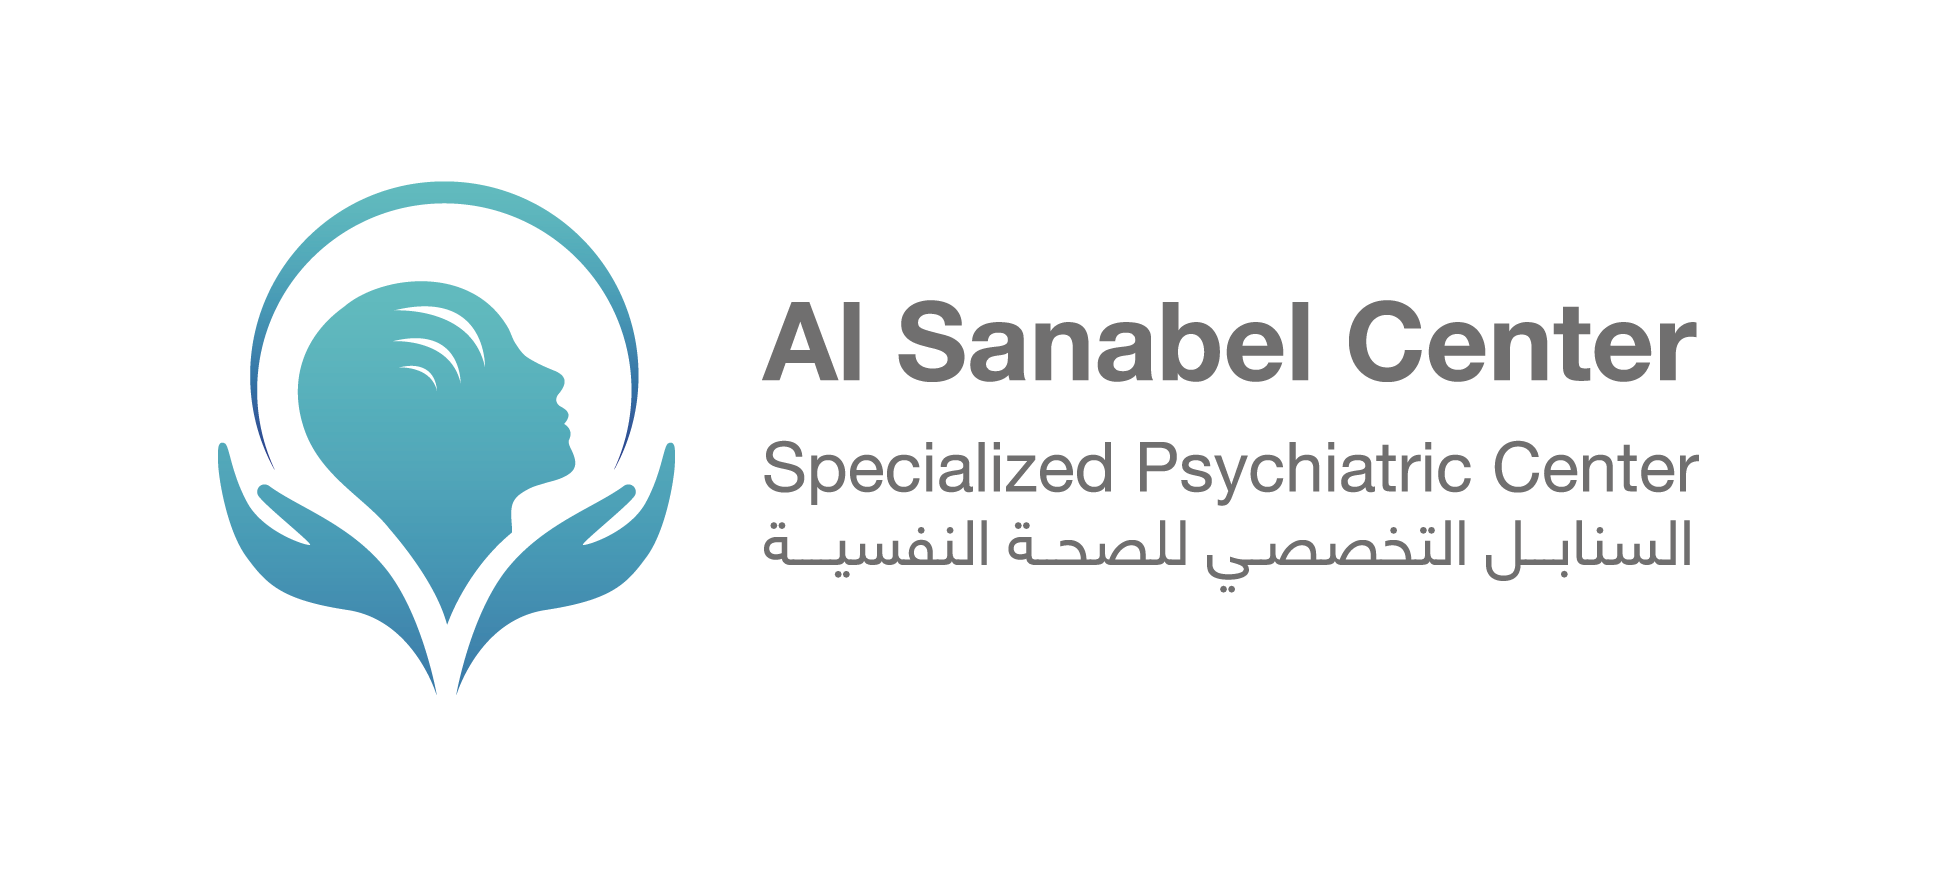 Al-Sanabel Specialized Psychiatric Center